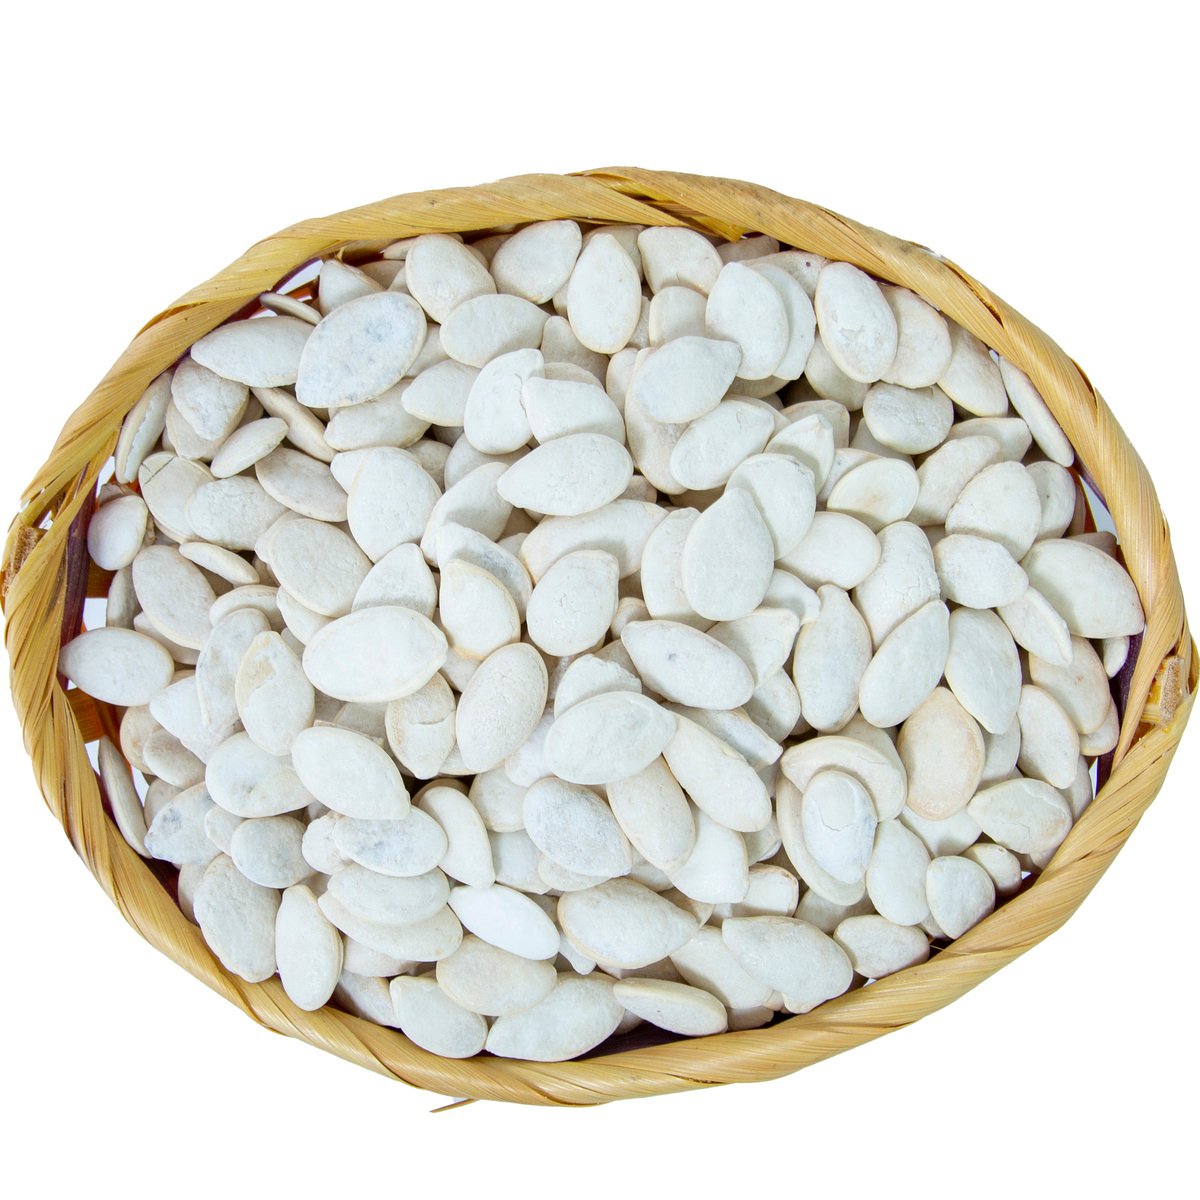 اشتري قم بشراء لب أبيض 250 جم تقريبا Online at Best Price من الموقع - من لولو هايبر ماركت Roastery Nuts في الامارات